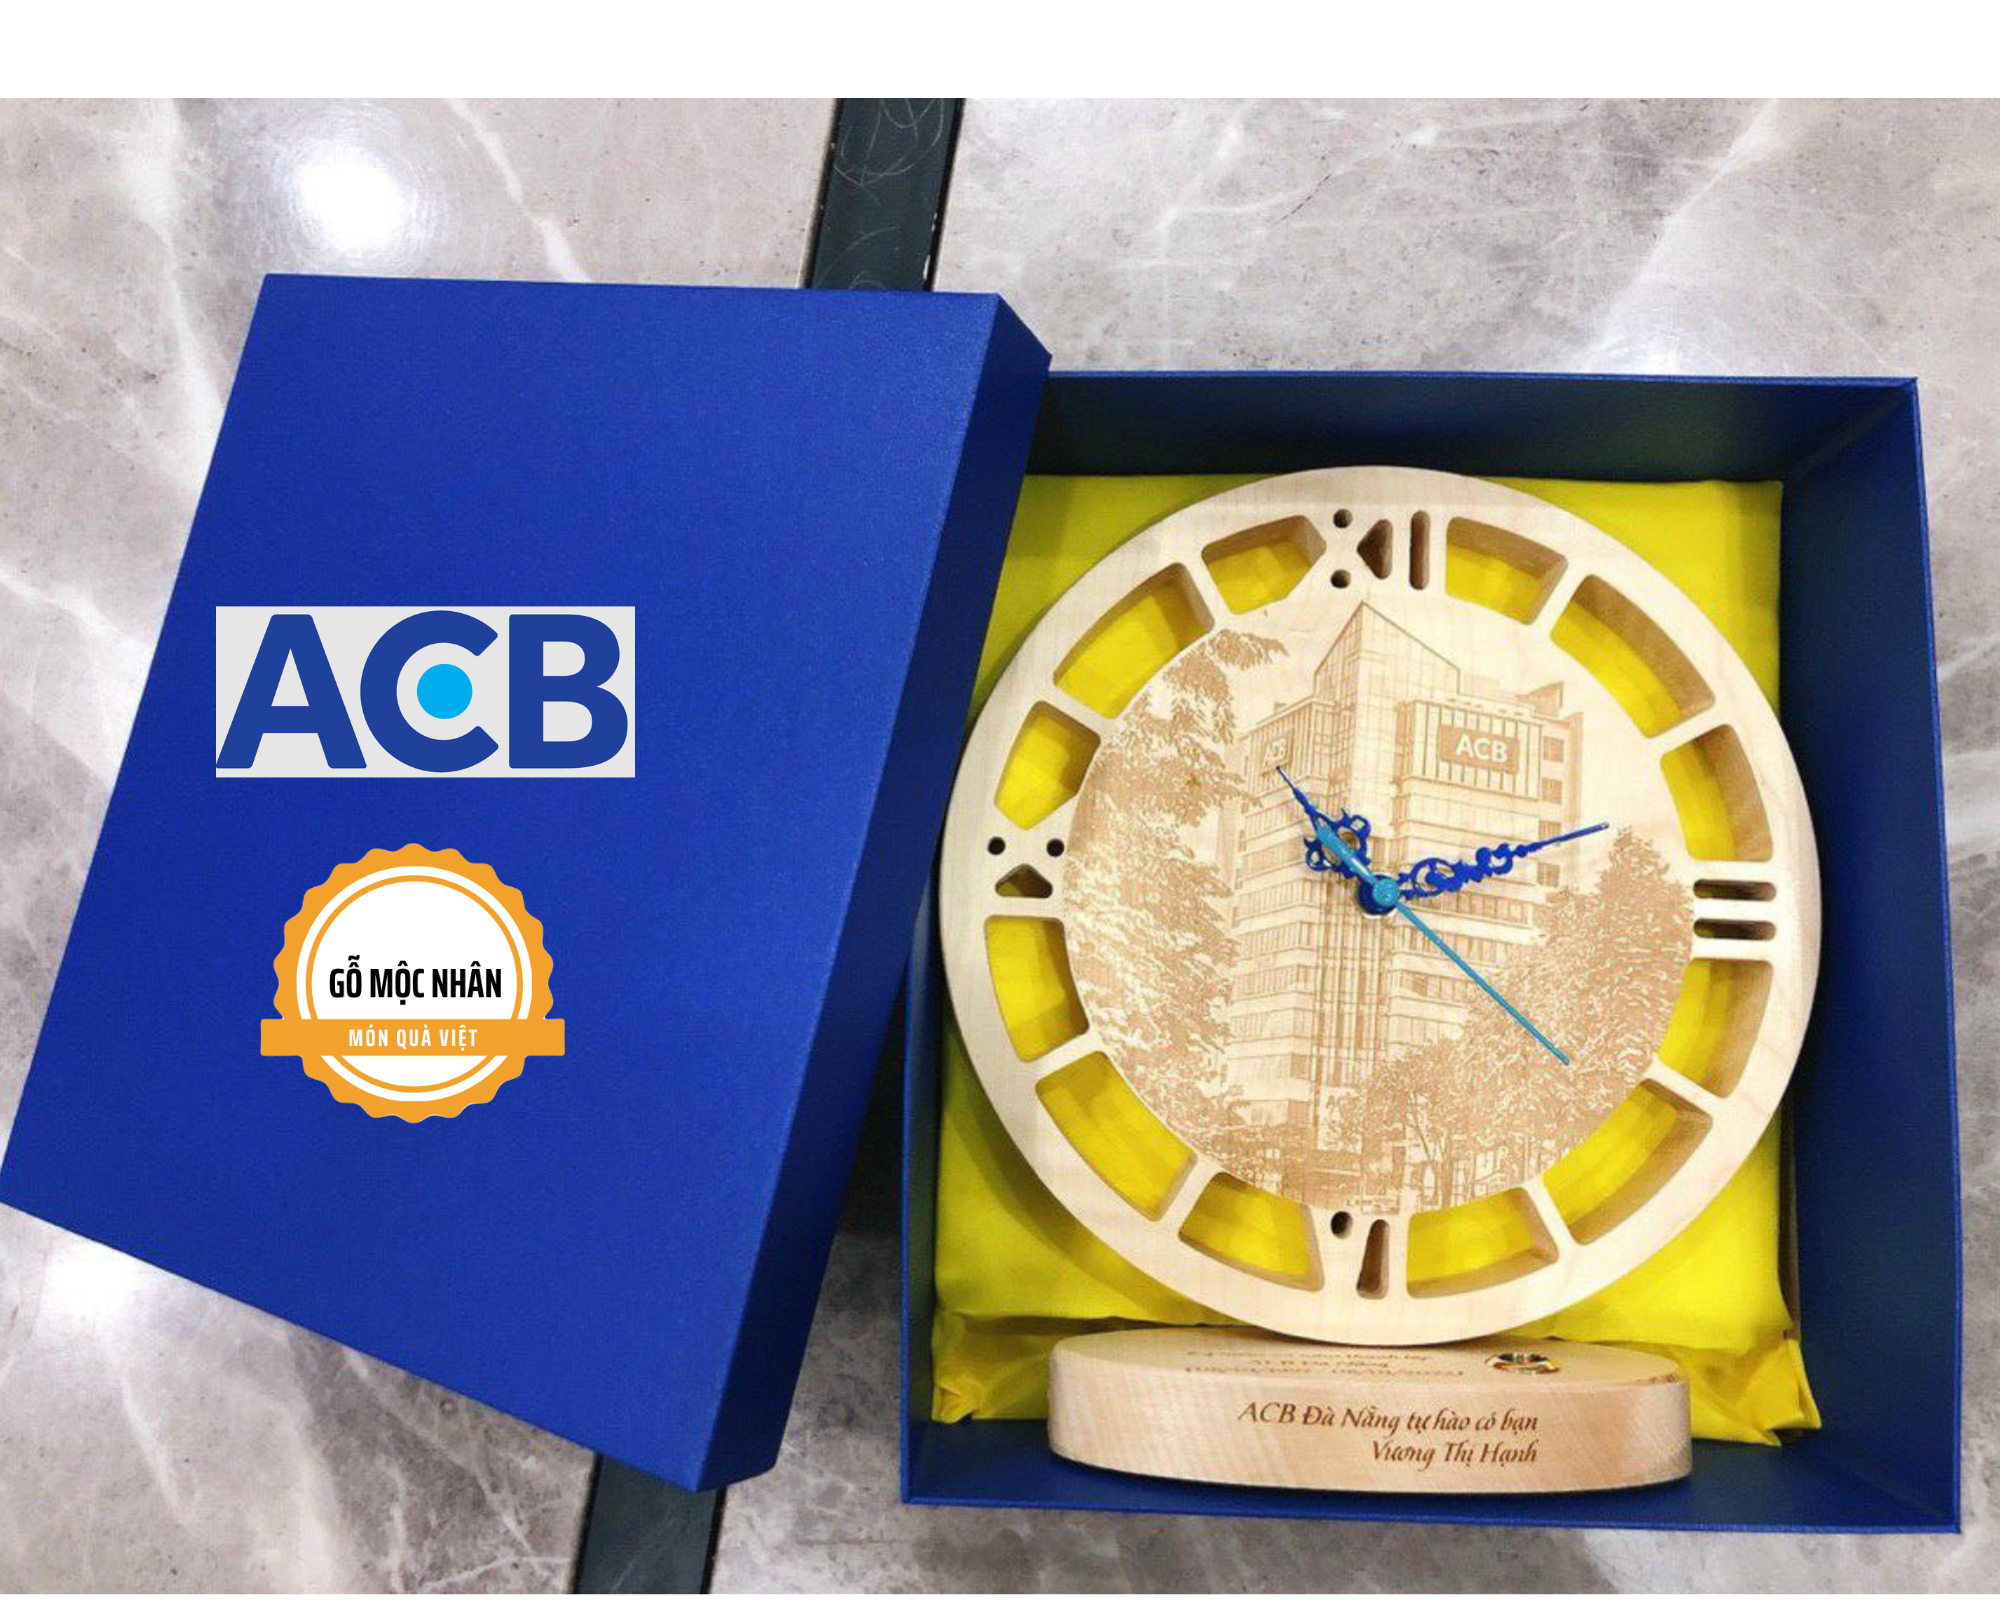 ACB Bank tặng Đồng Hồ Gỗ cho Quý Đối Tác và Nhân Viên